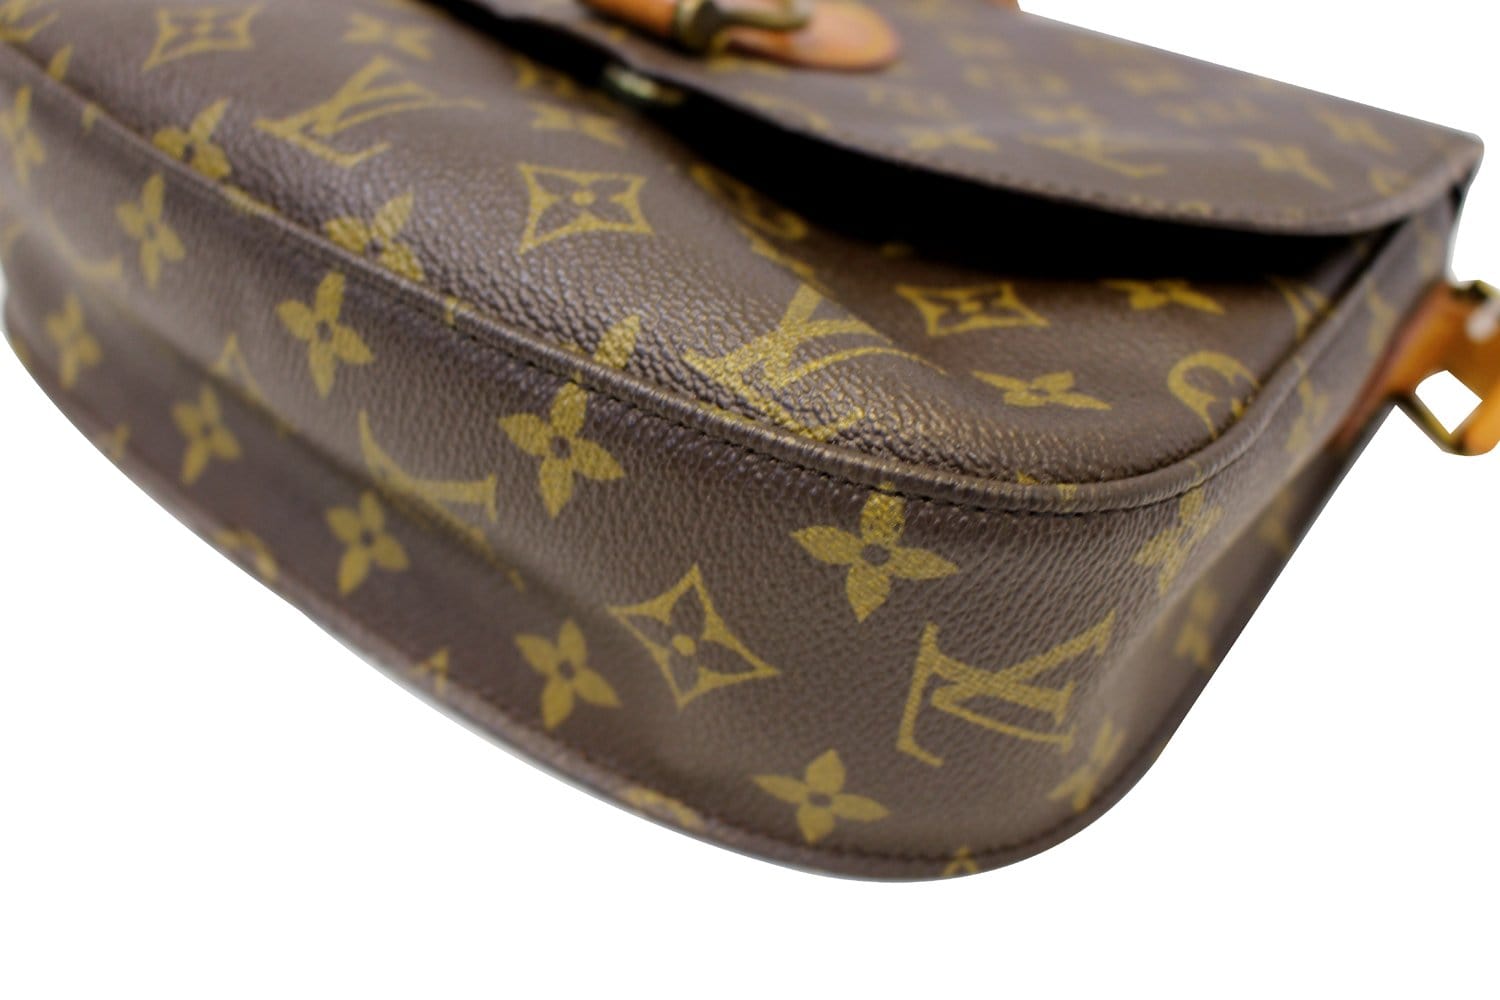 Handbags Louis Vuitton Louis Vuitton Monogram Saint Cloud PM Shoulder Bag M51244 LV Auth am343BA